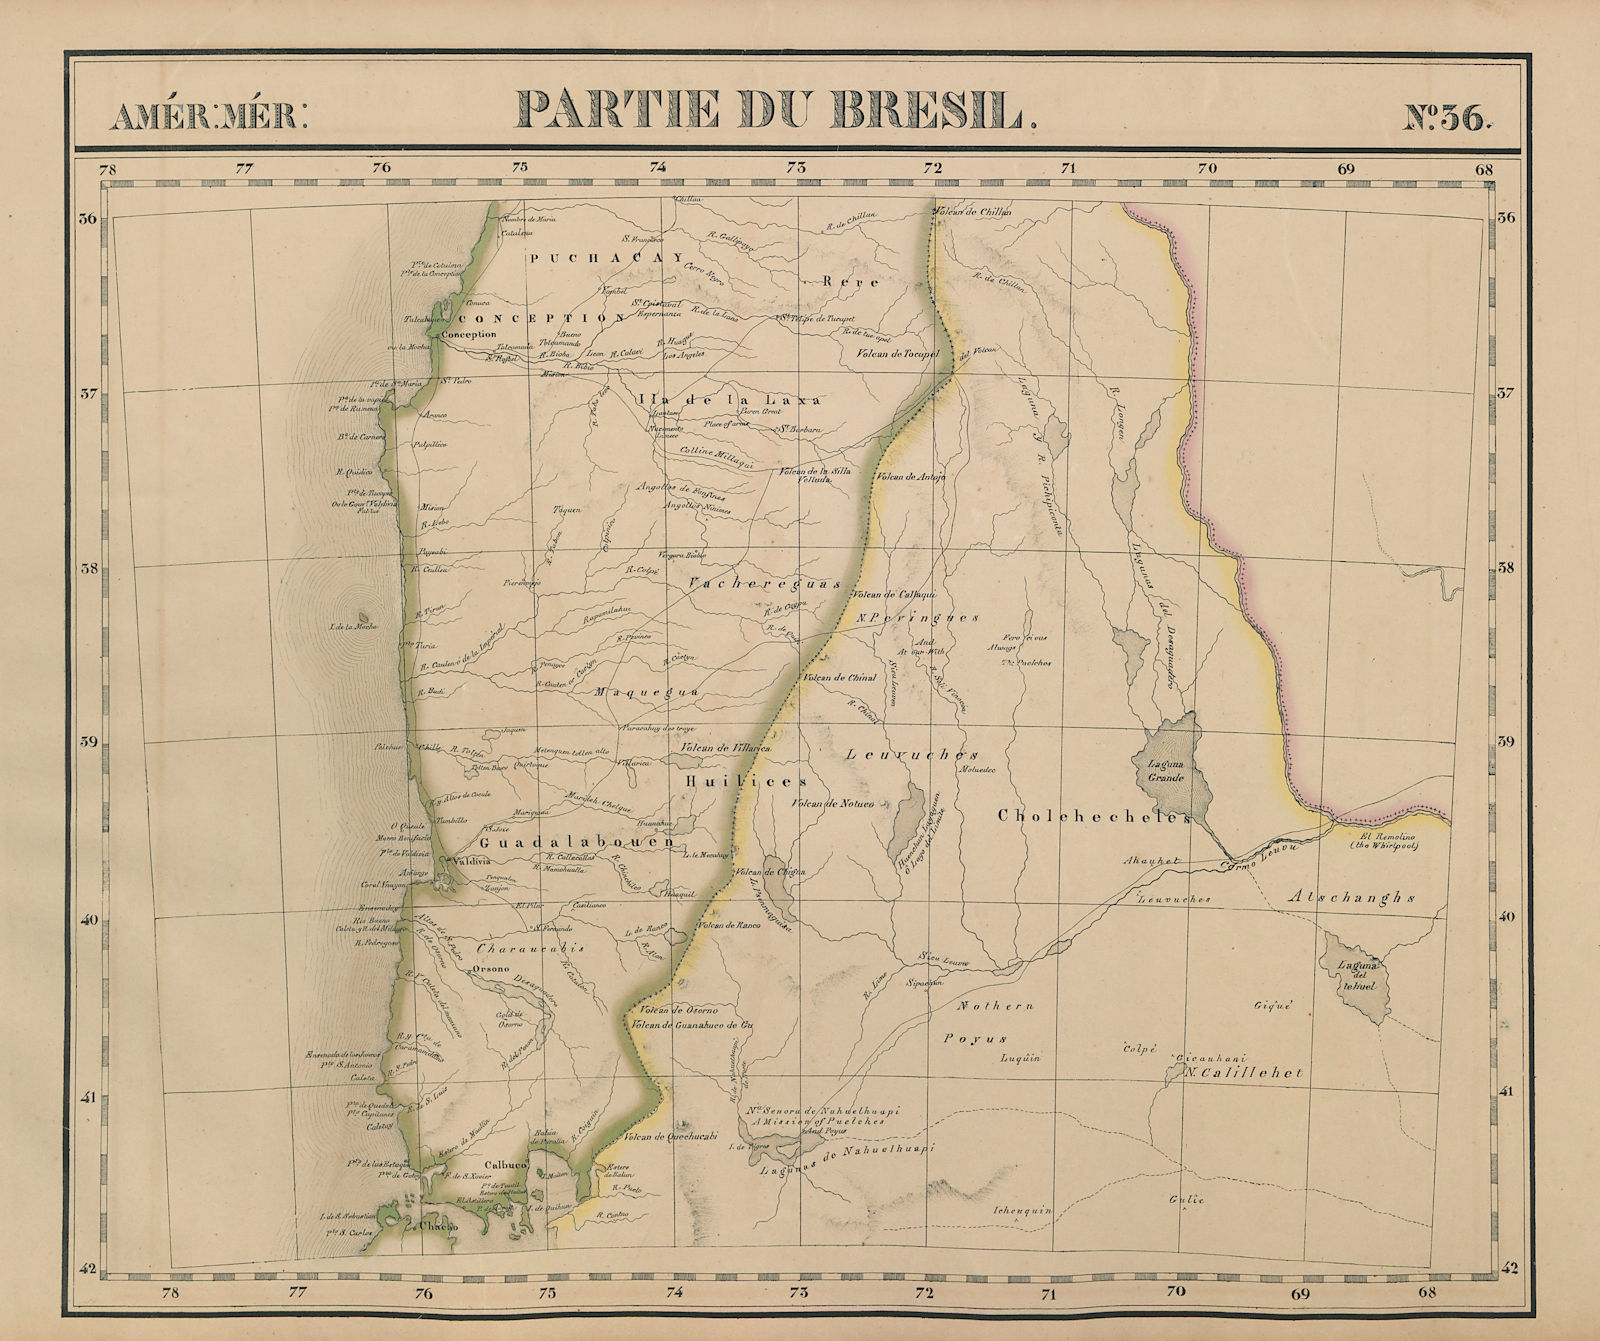 Associate Product Amér Mér. Brésil #36 Central Chile. West-central Argentina VANDERMAELEN 1827 map